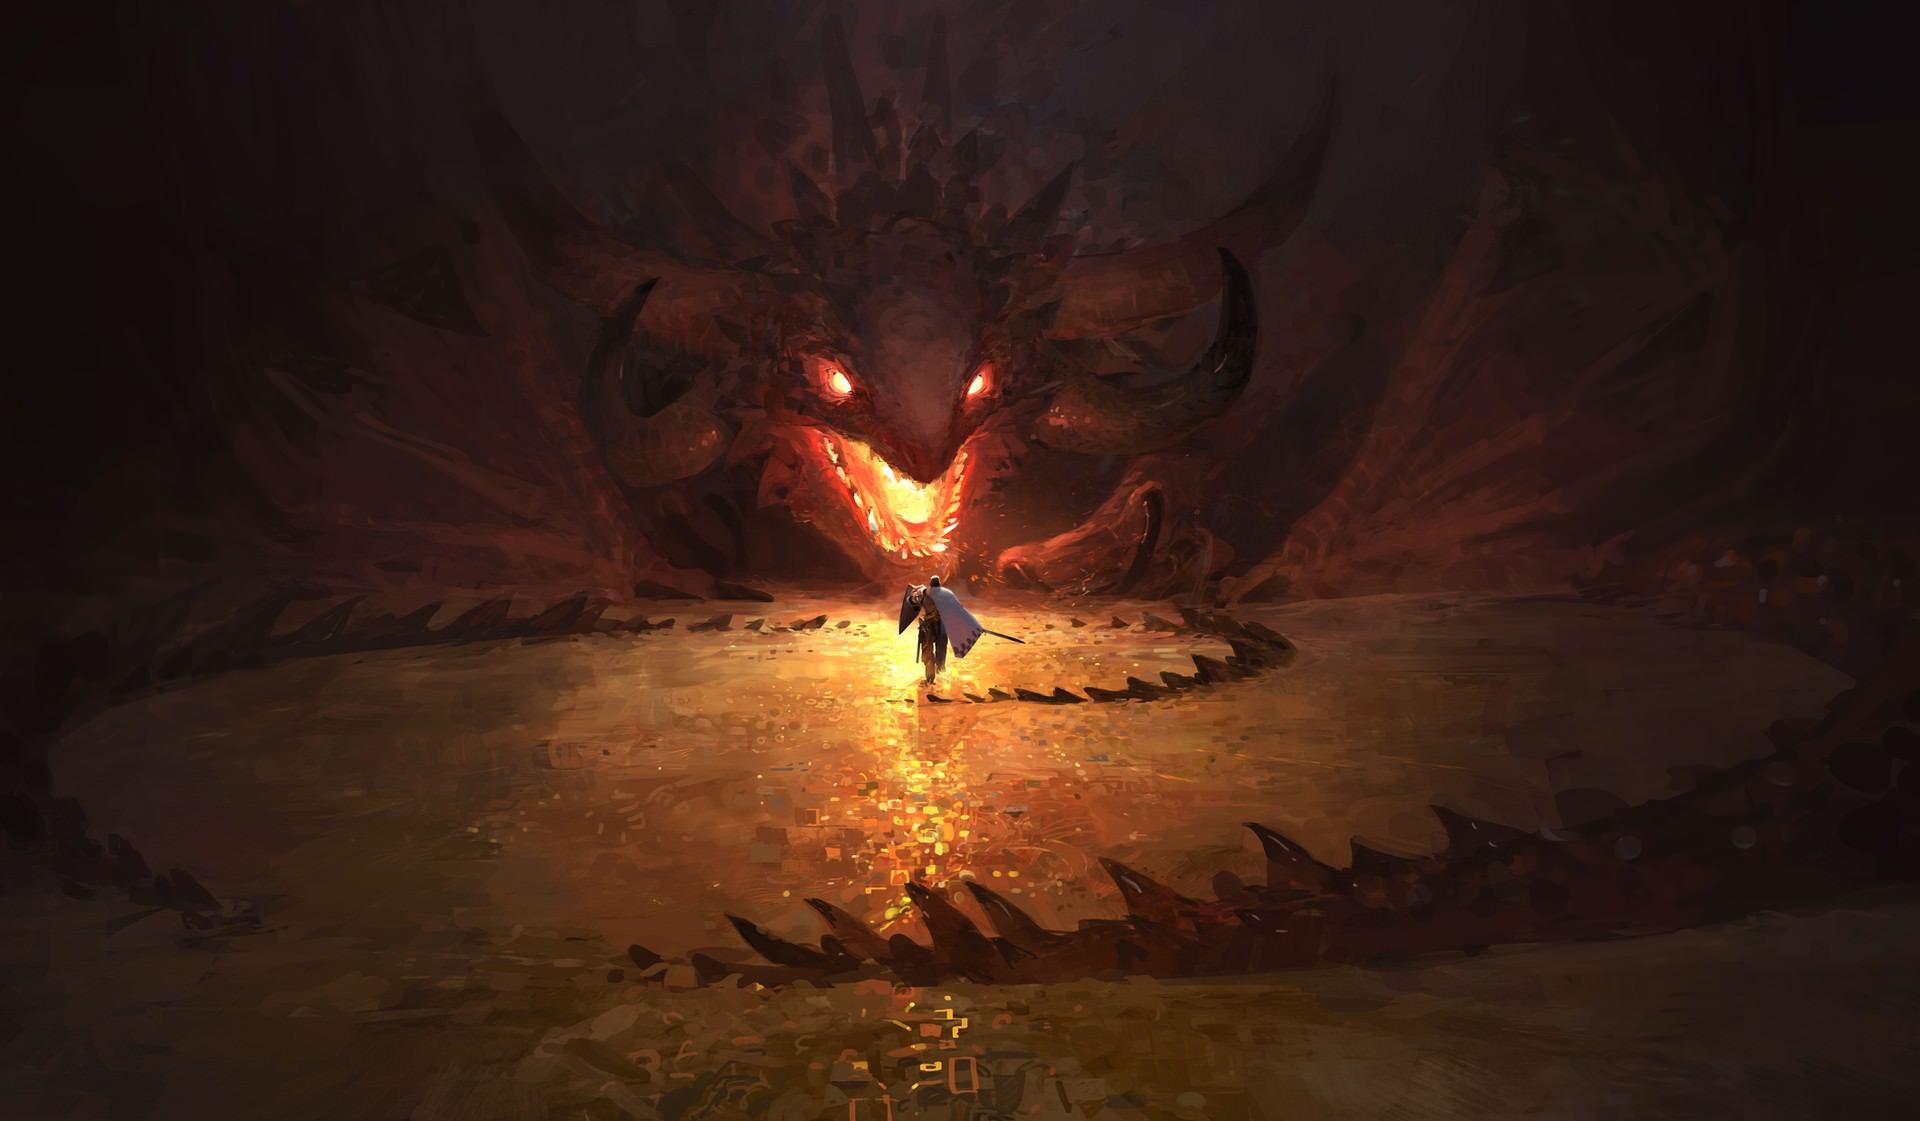 Dragon's Lair by Zhengyi Wang